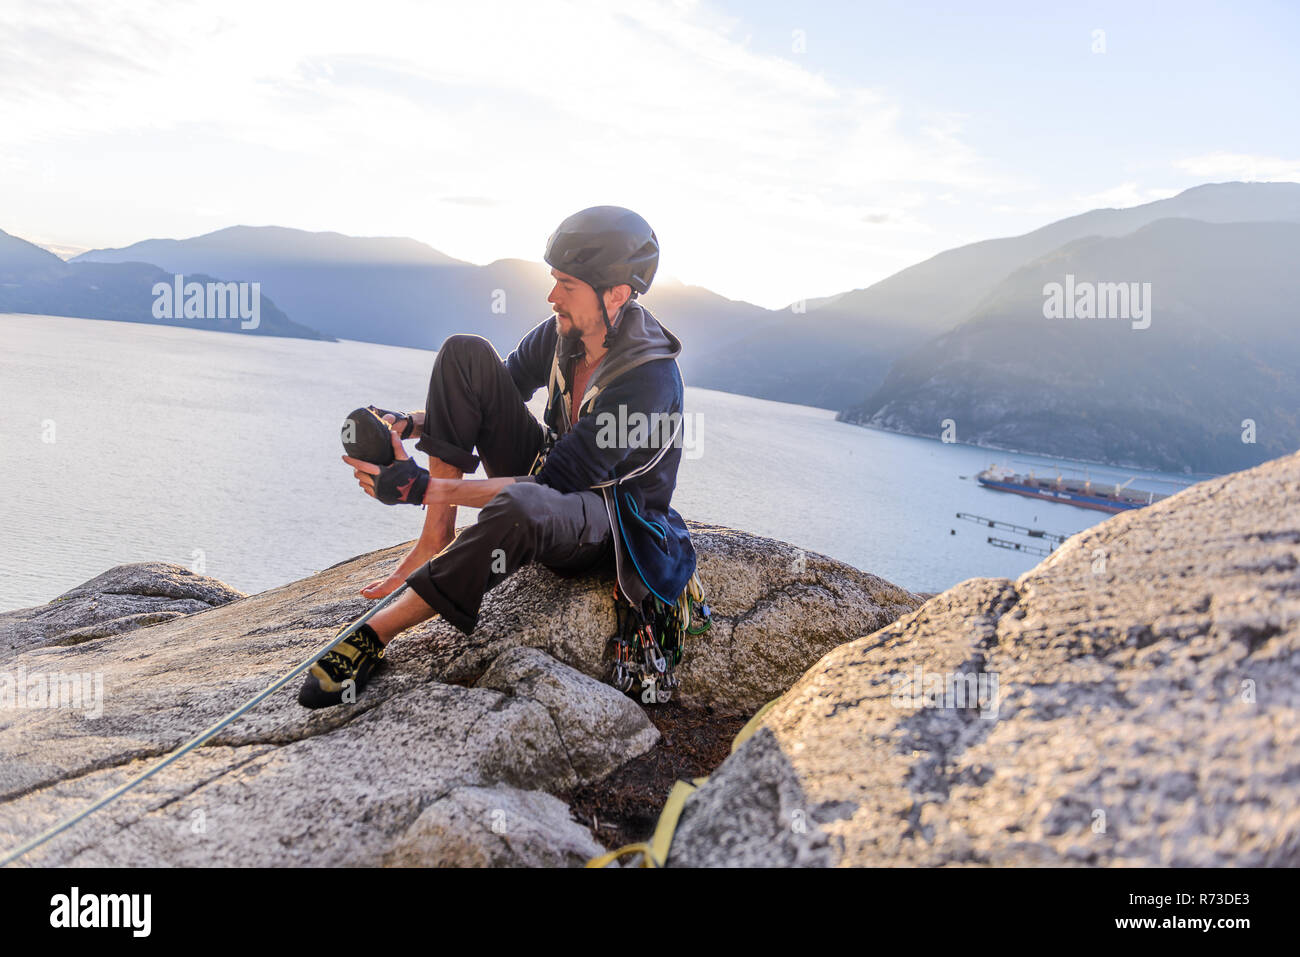 Rock climber on Malamute, Squamish, Canada Stock Photo